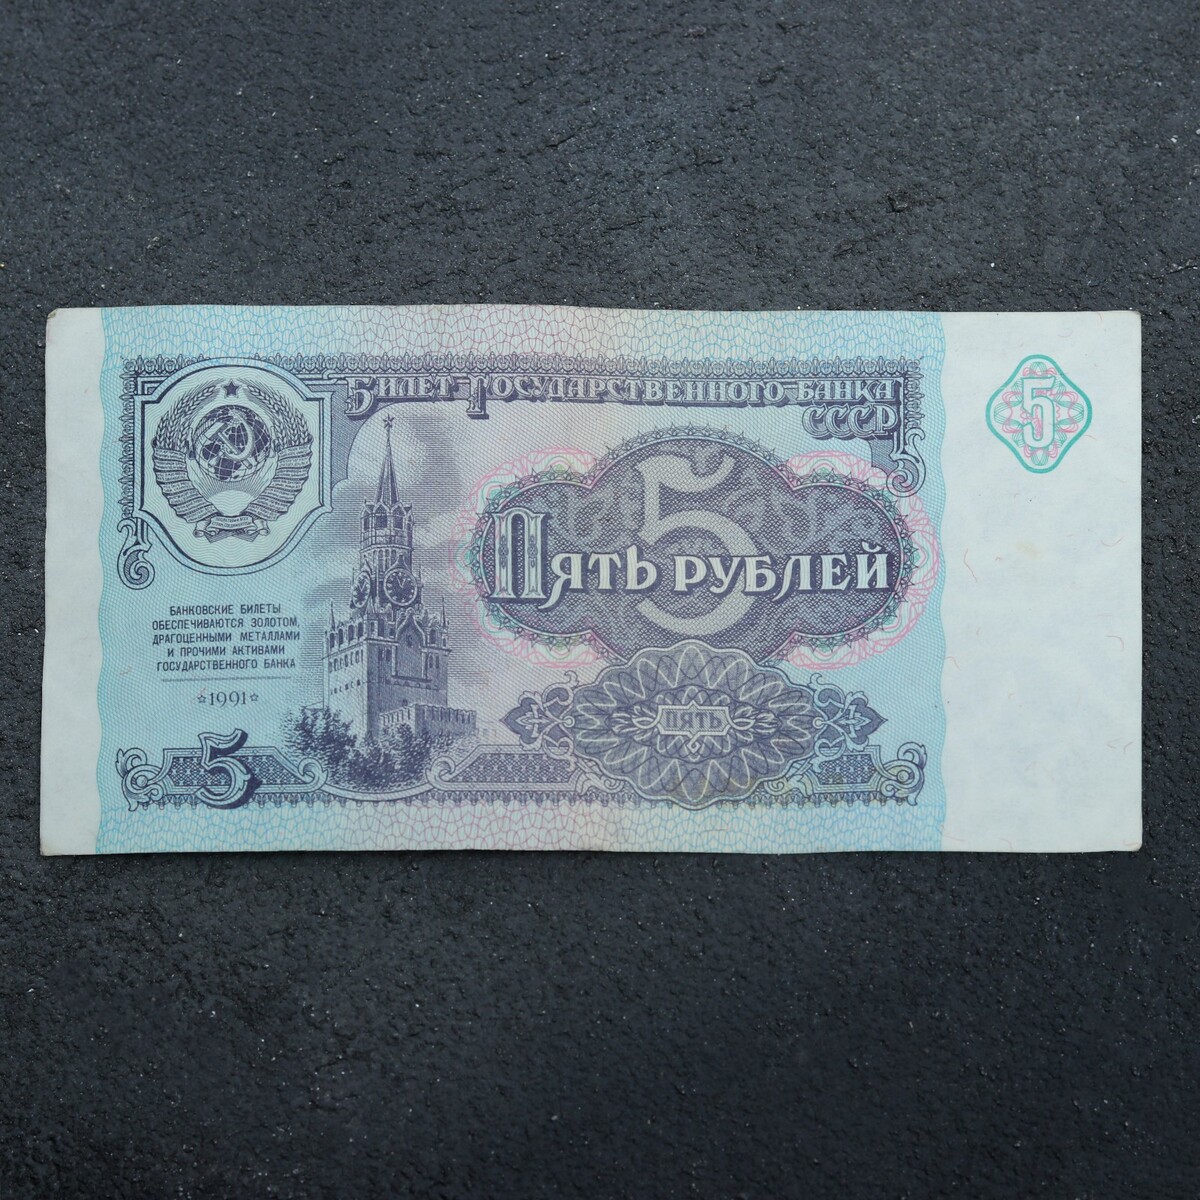 Банкнота 5 рублей ссср 1991, с файлом, б/у выросшие в ссср